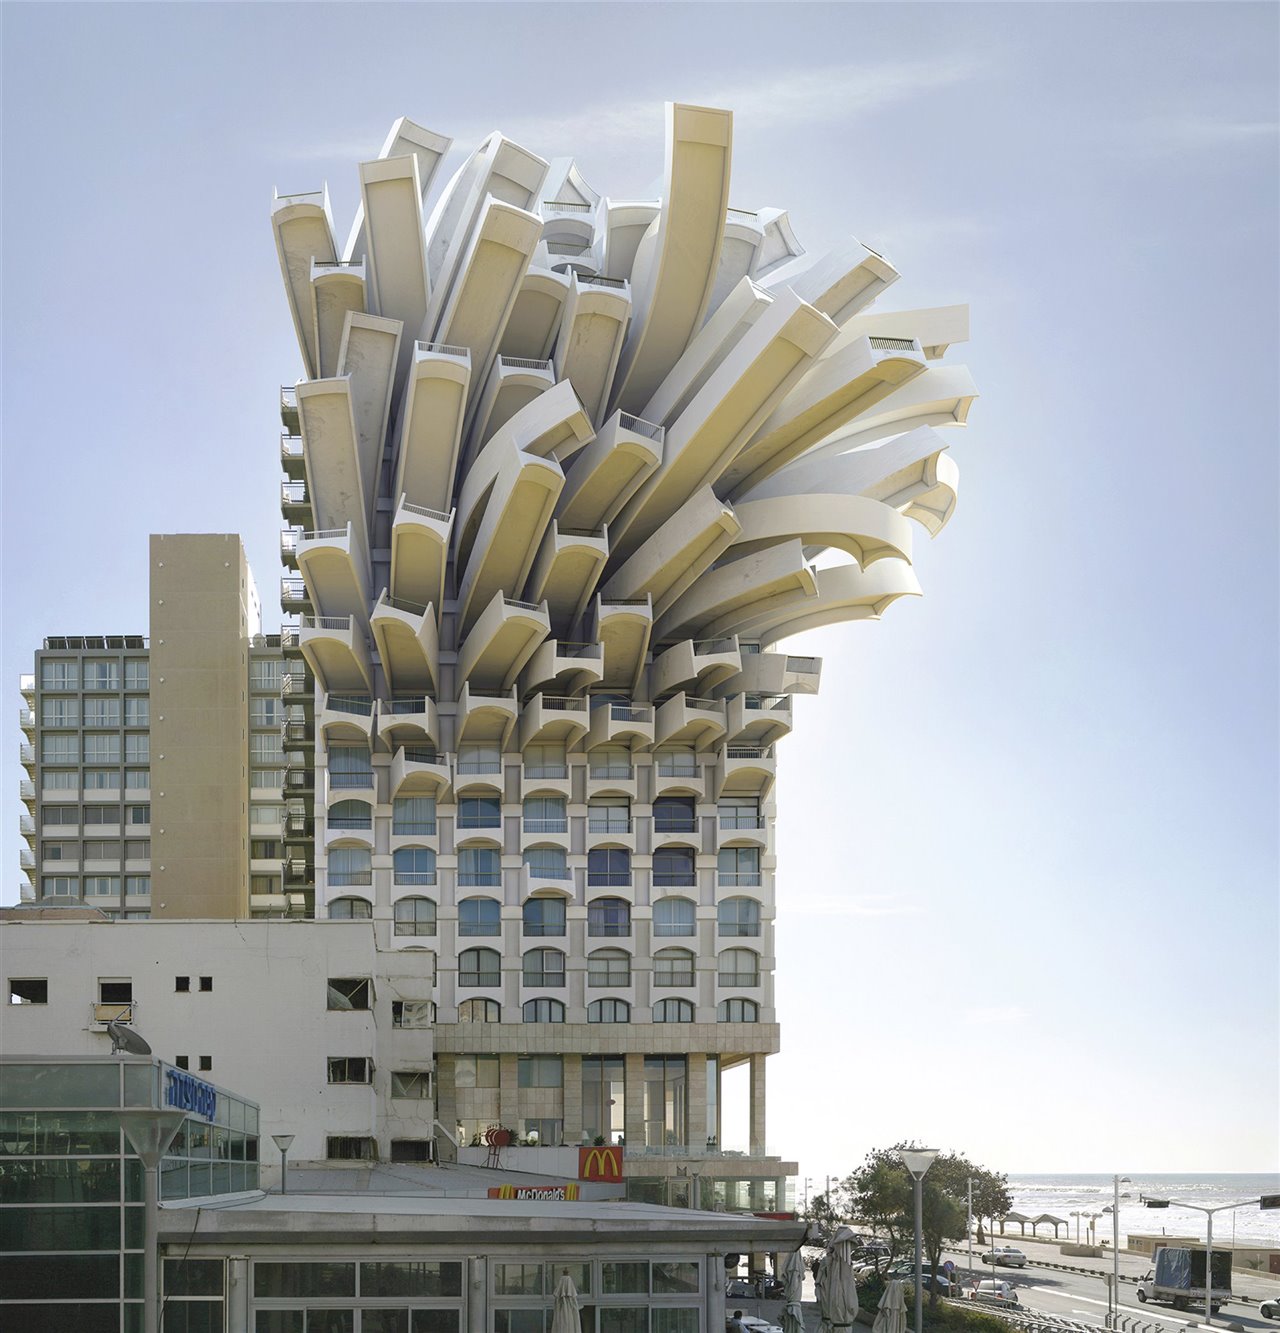 La obra Medusa recrea un edificio de la ciudad de Tel Aviv que se convierte en tentáculos en la parte superior